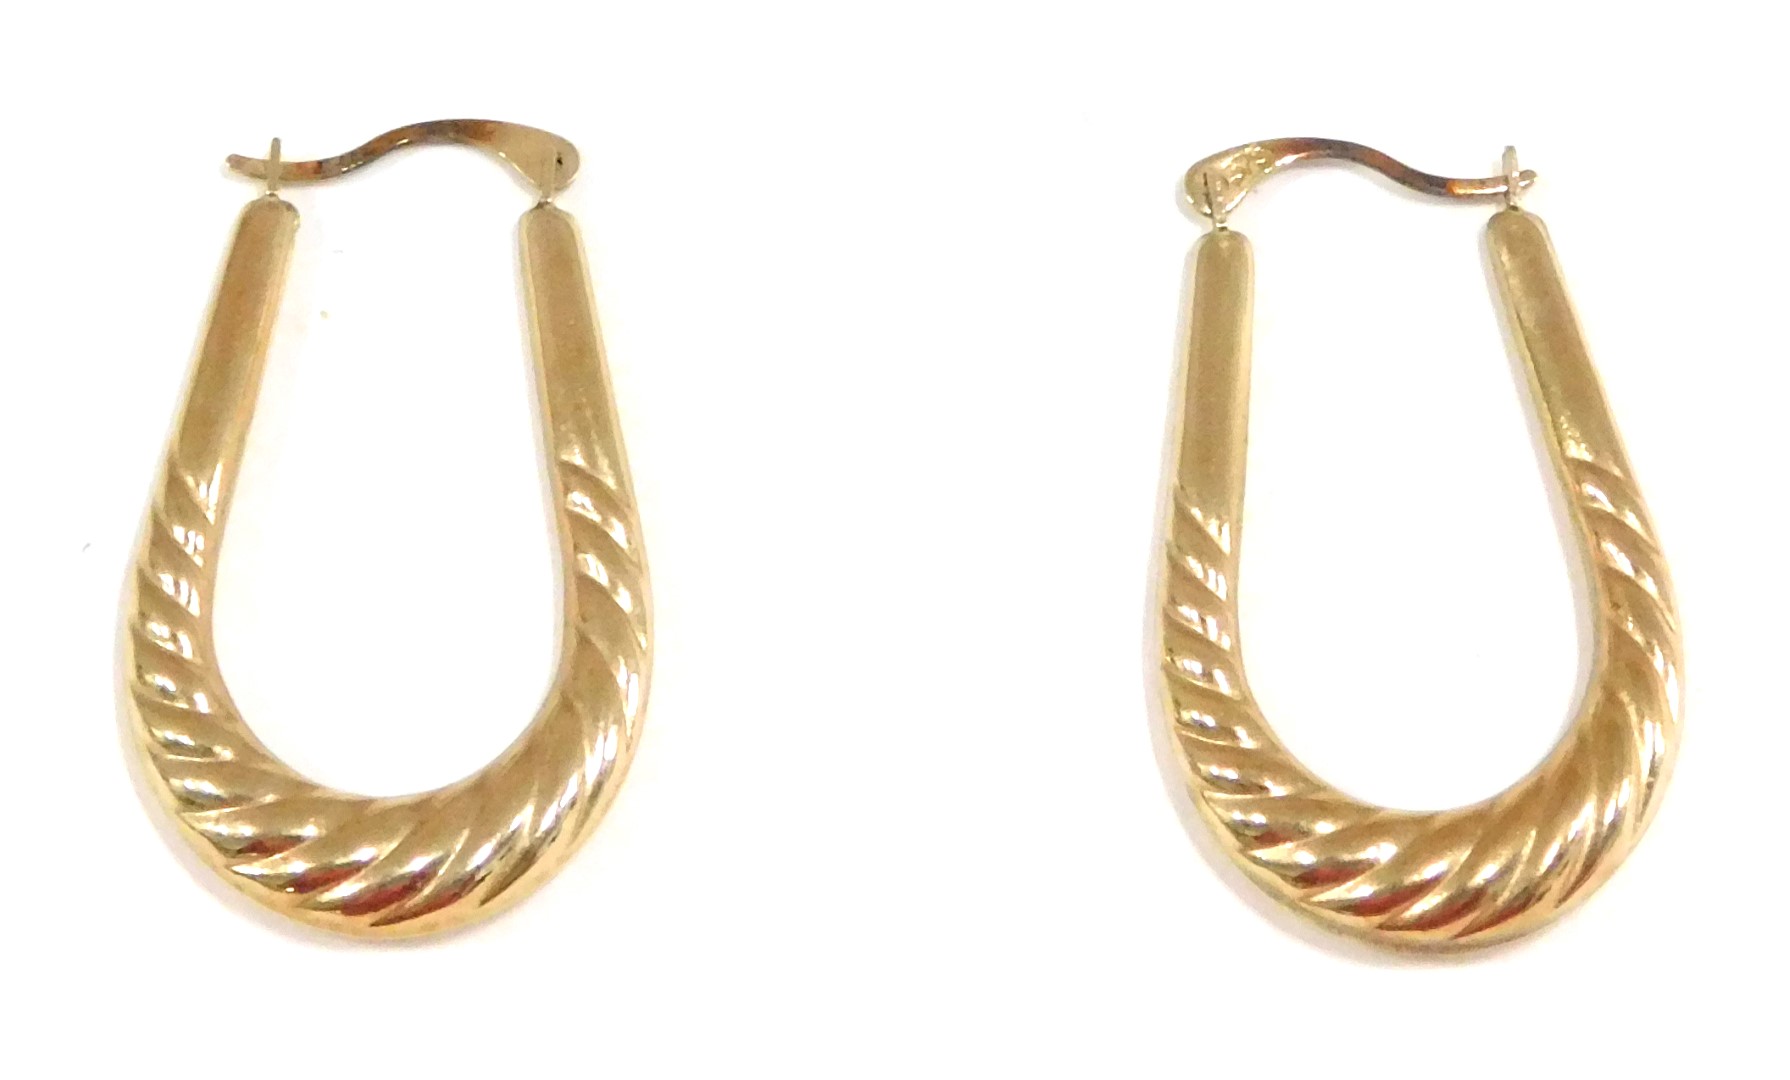 A pair of hoop earrings, the elongated hoops of twist design, yellow metal stamped 375, 3cm drop, 1.